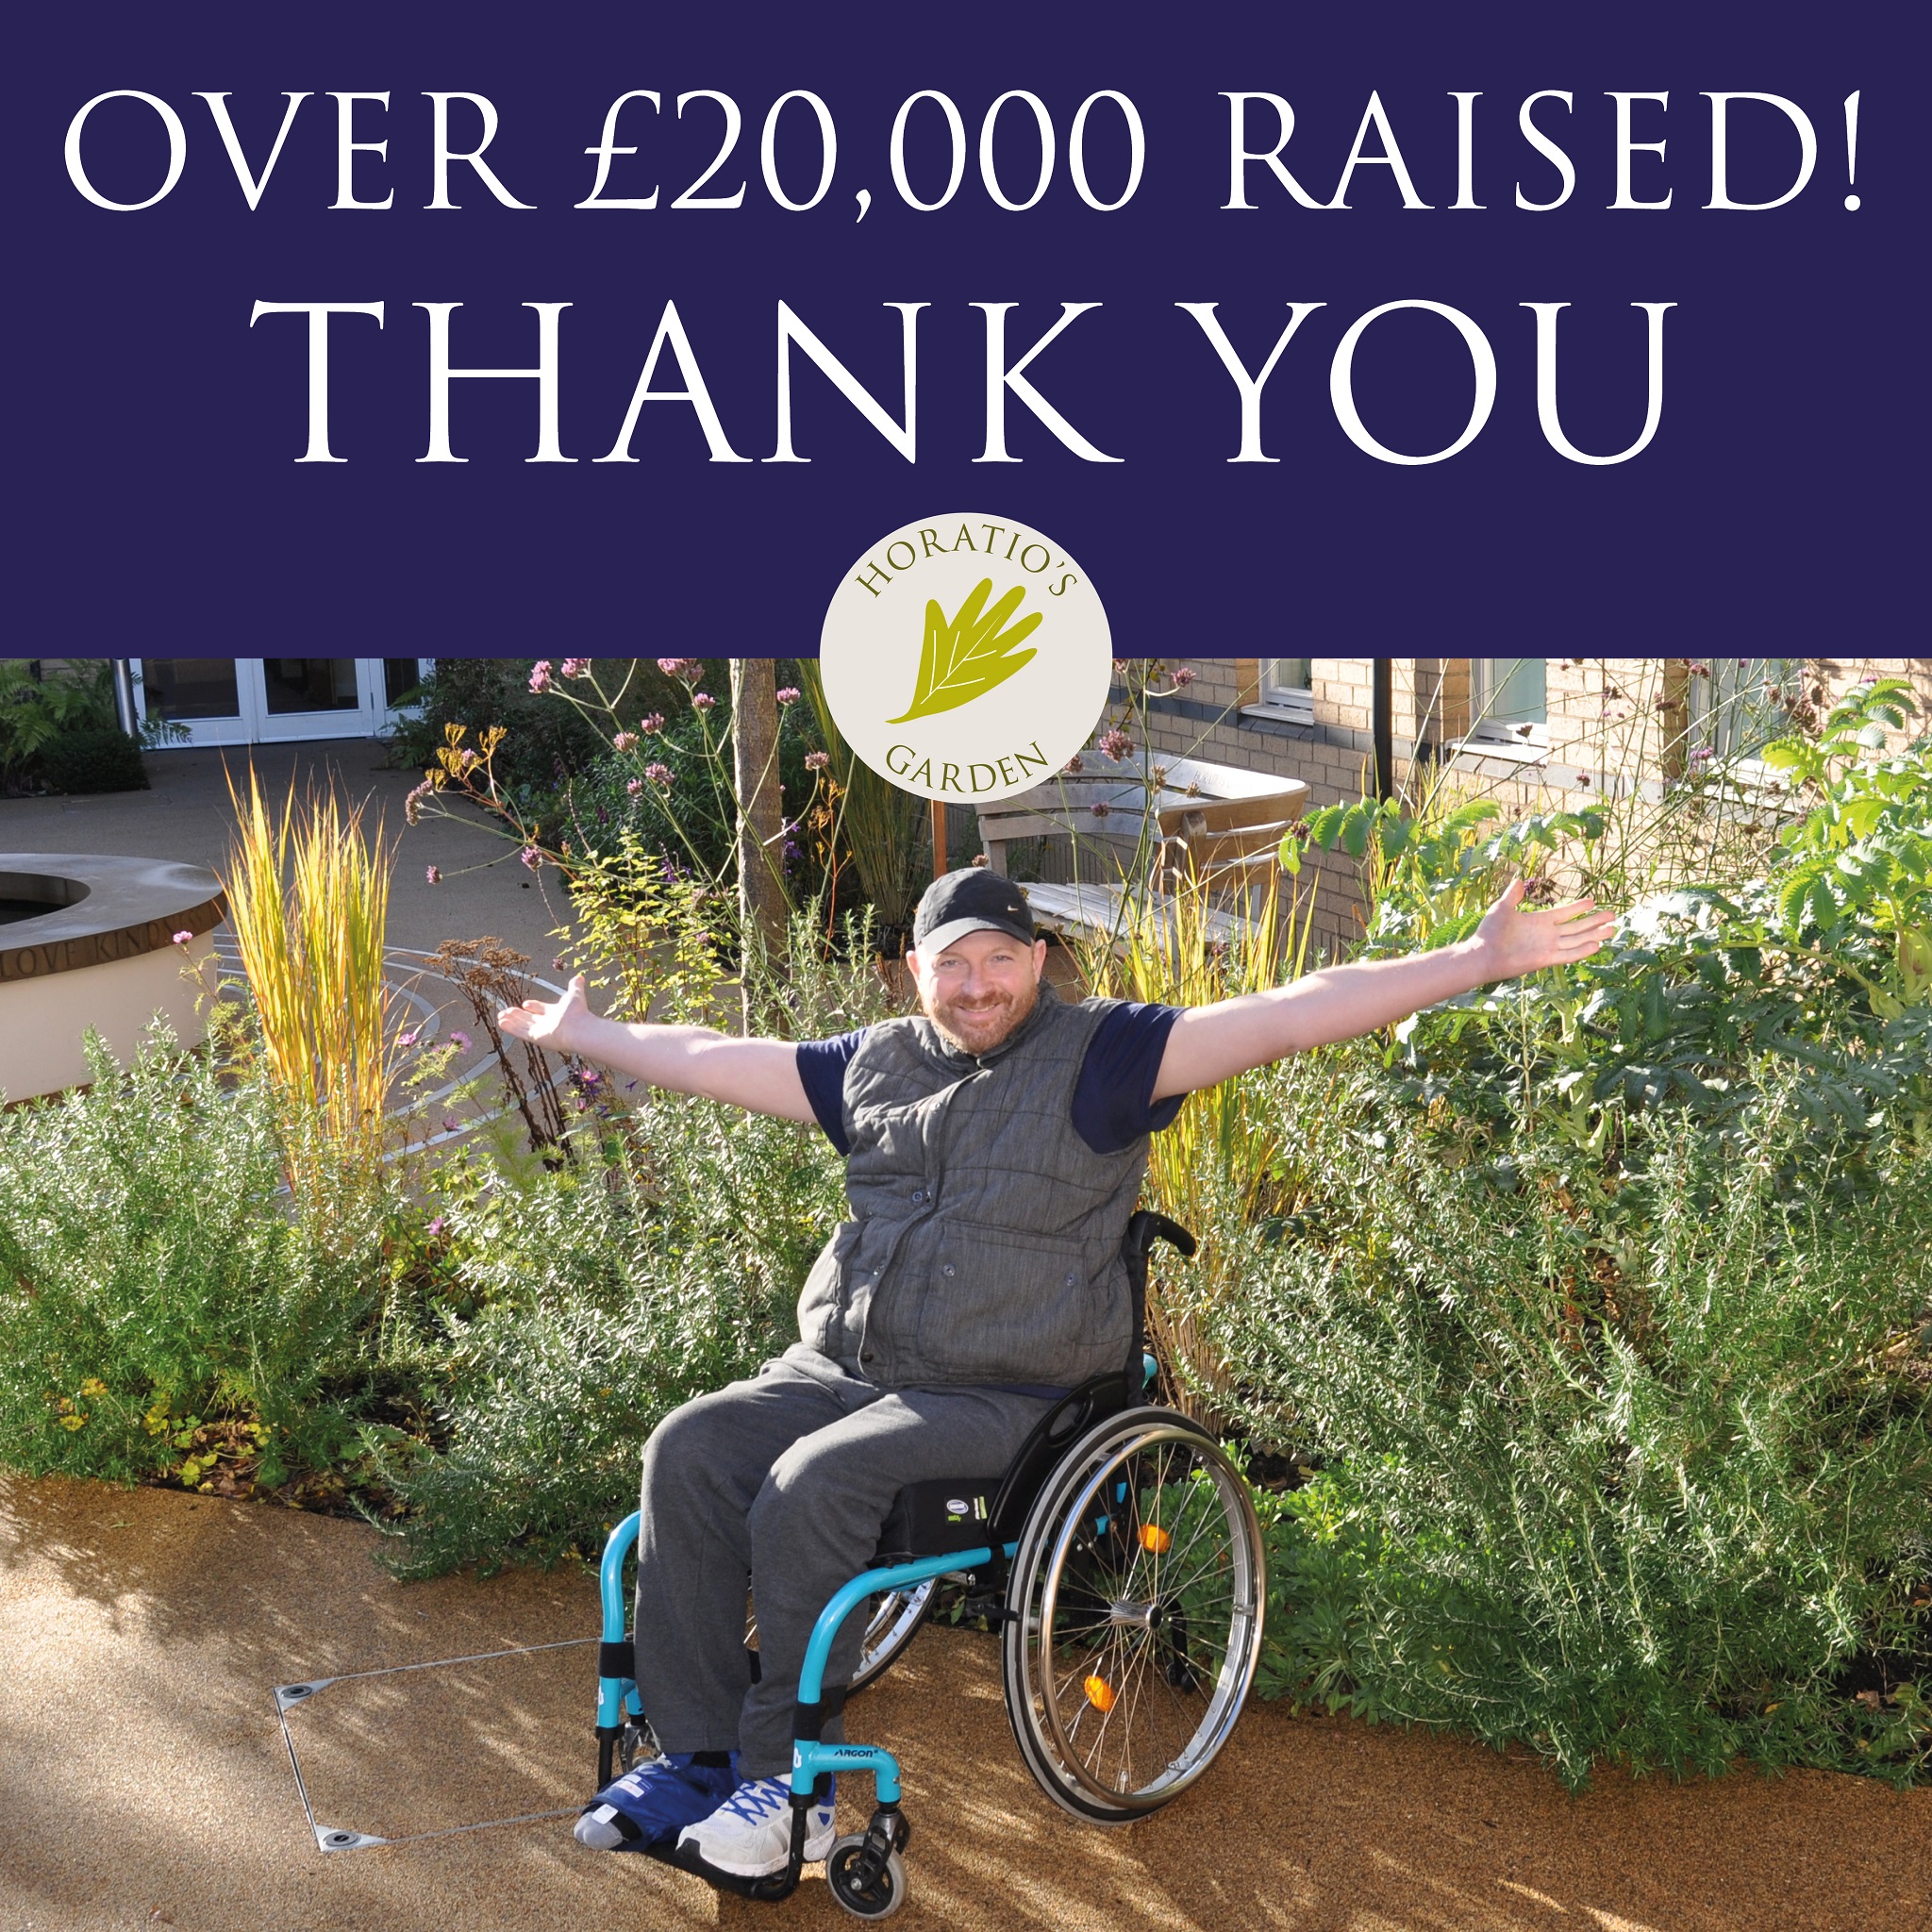 our spring raffle raises over £20,000! Horatio's Garden